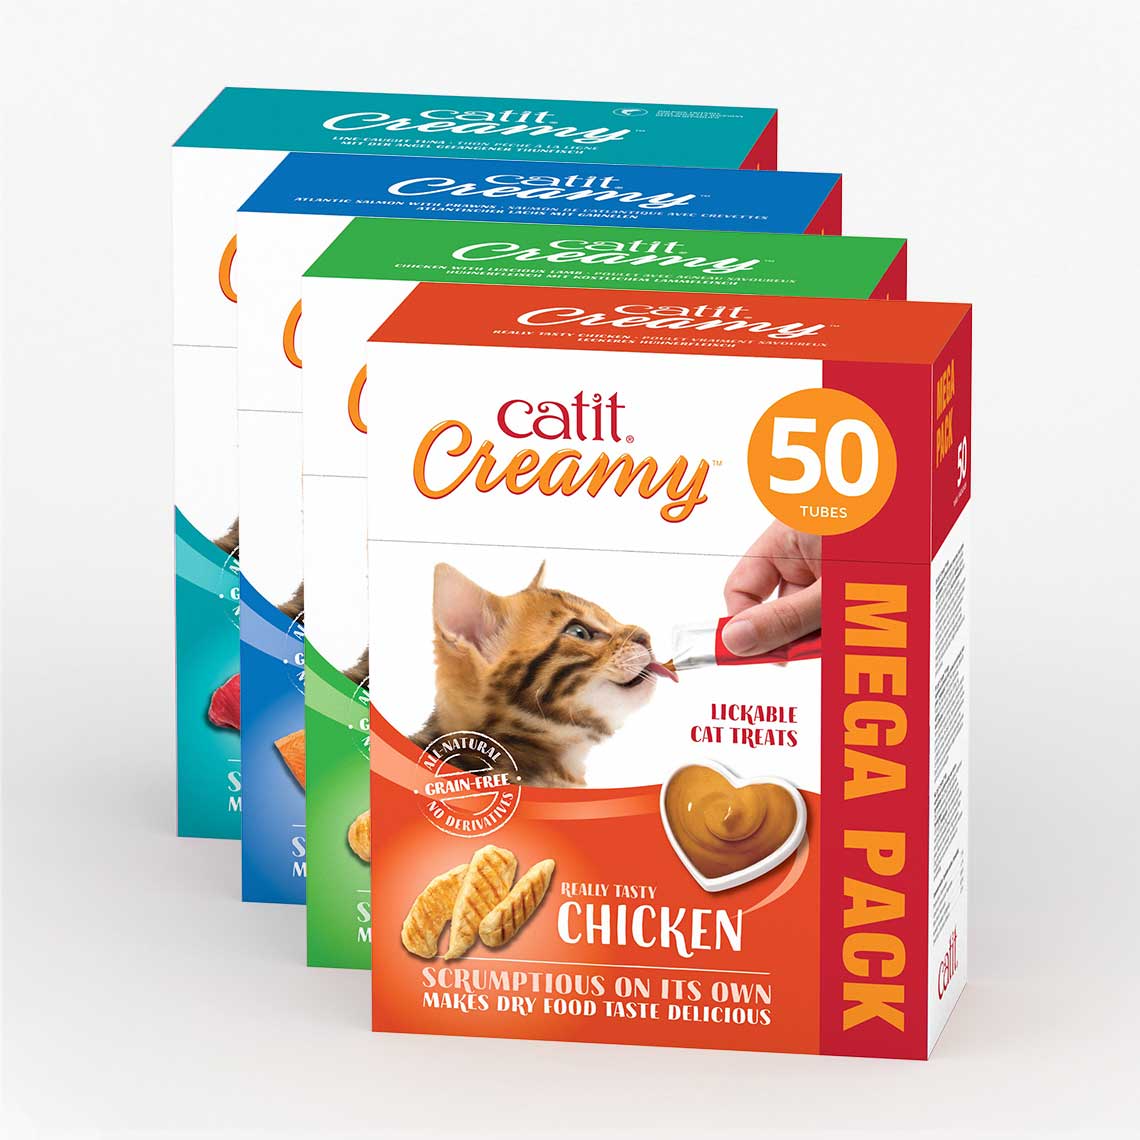 Friandises Catit Creamy – paquet de 50 ─ Saumon et crevettes